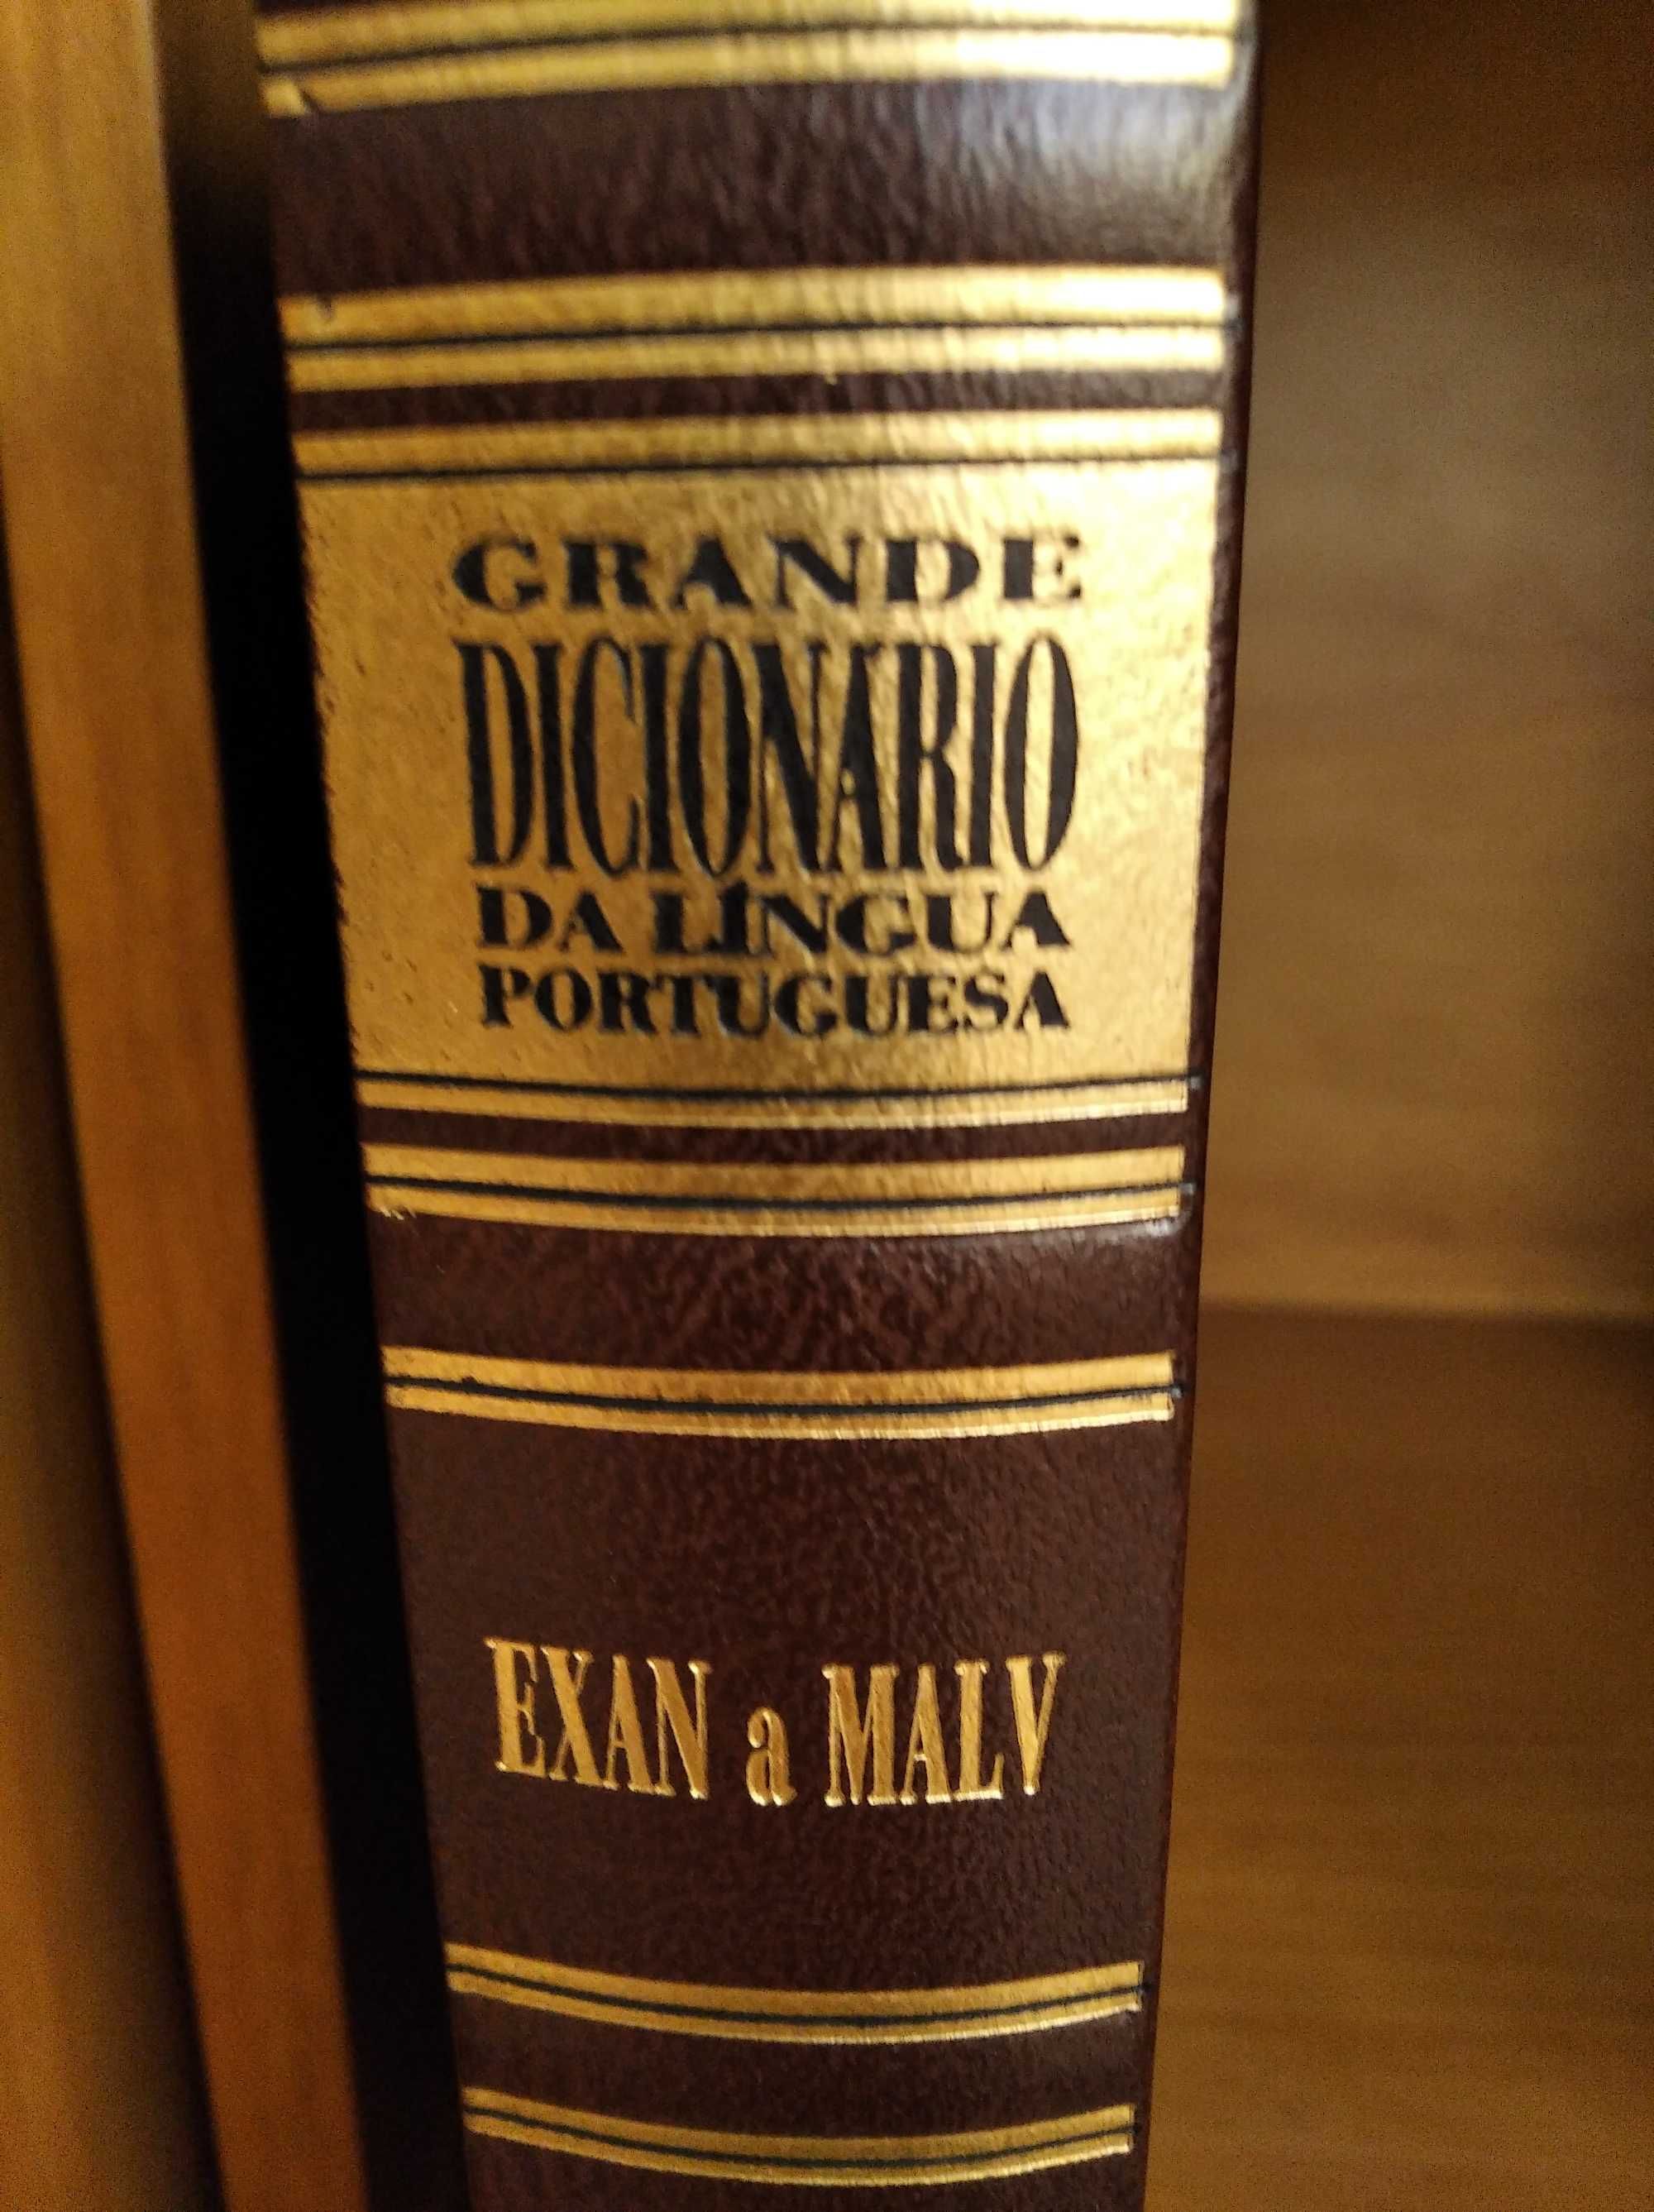 Coleção de 6 volumes de dicionários portugueses